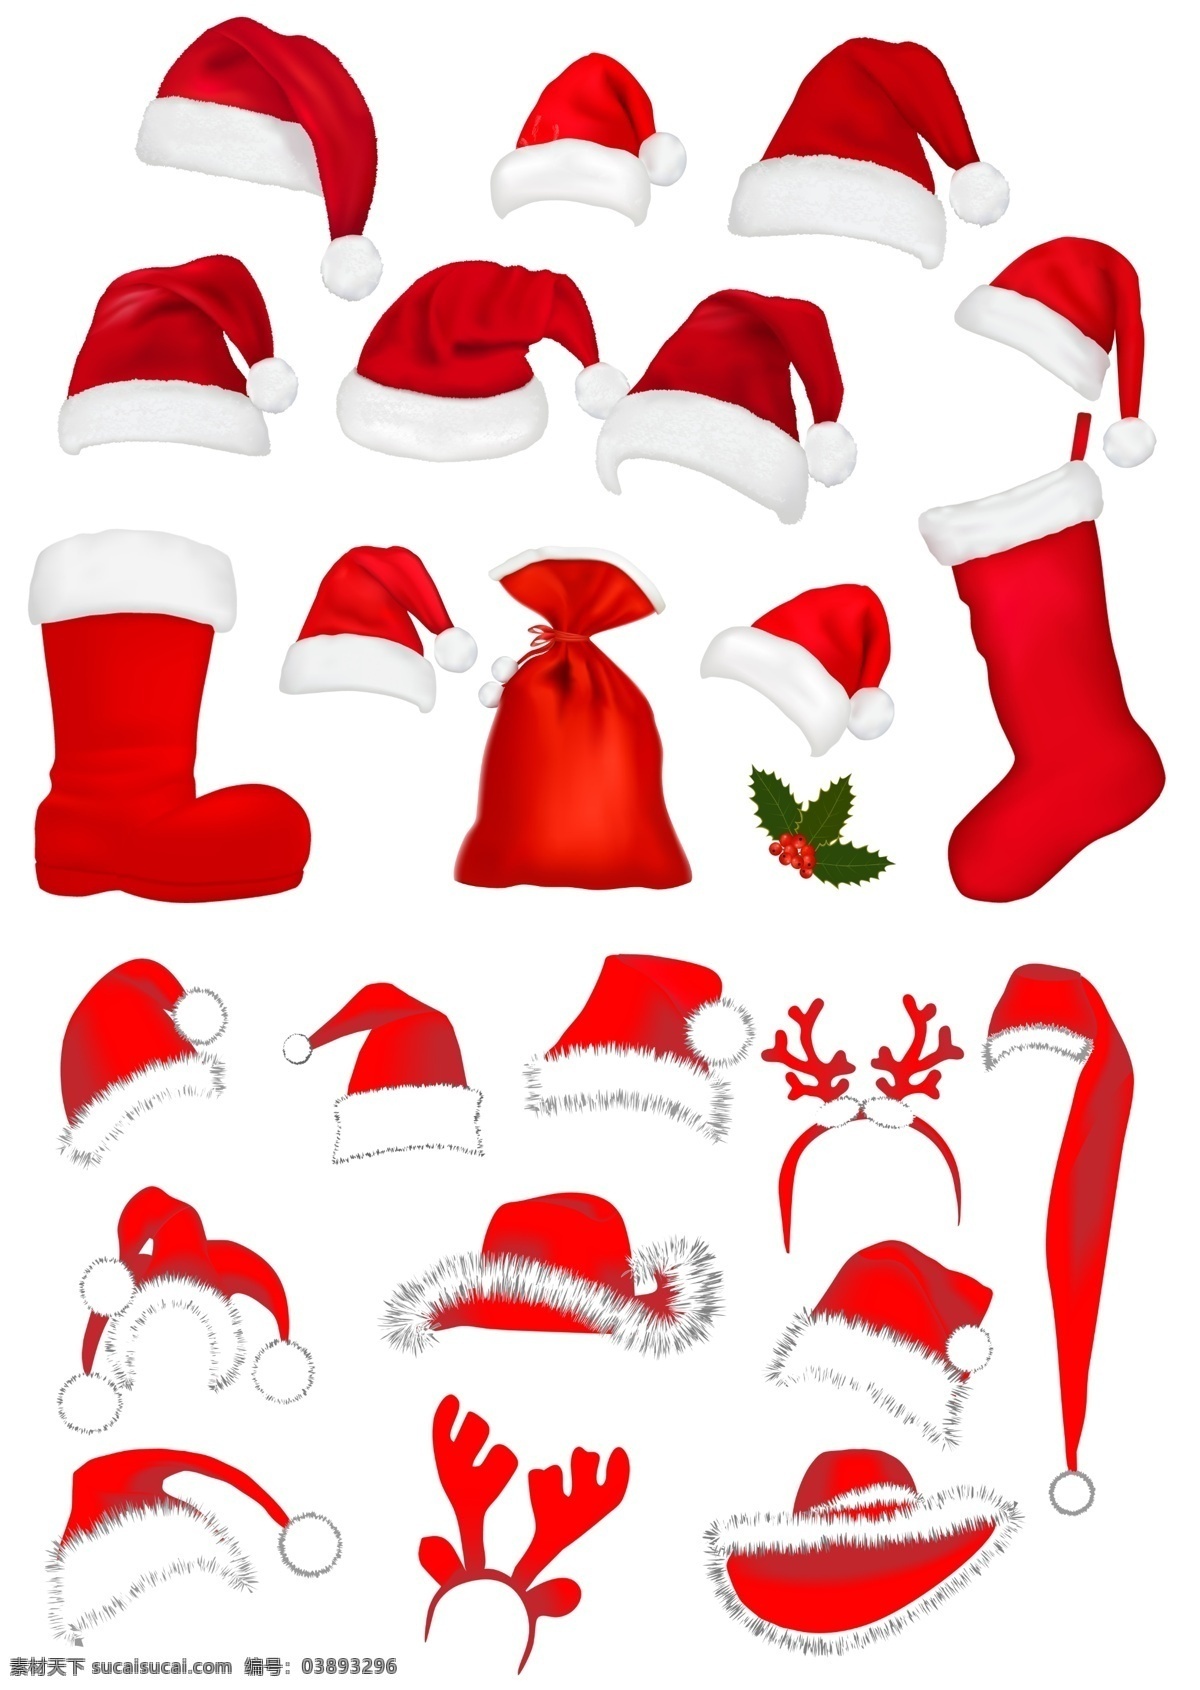 圣诞帽 圣诞节 棉帽 棉靴 棉口袋 圣诞口袋 圣诞礼物袋 圣诞大口袋 鹿角帽 小丑帽 圣诞大头鞋 各种造型帽子 圣诞帽总集 分层 源文件